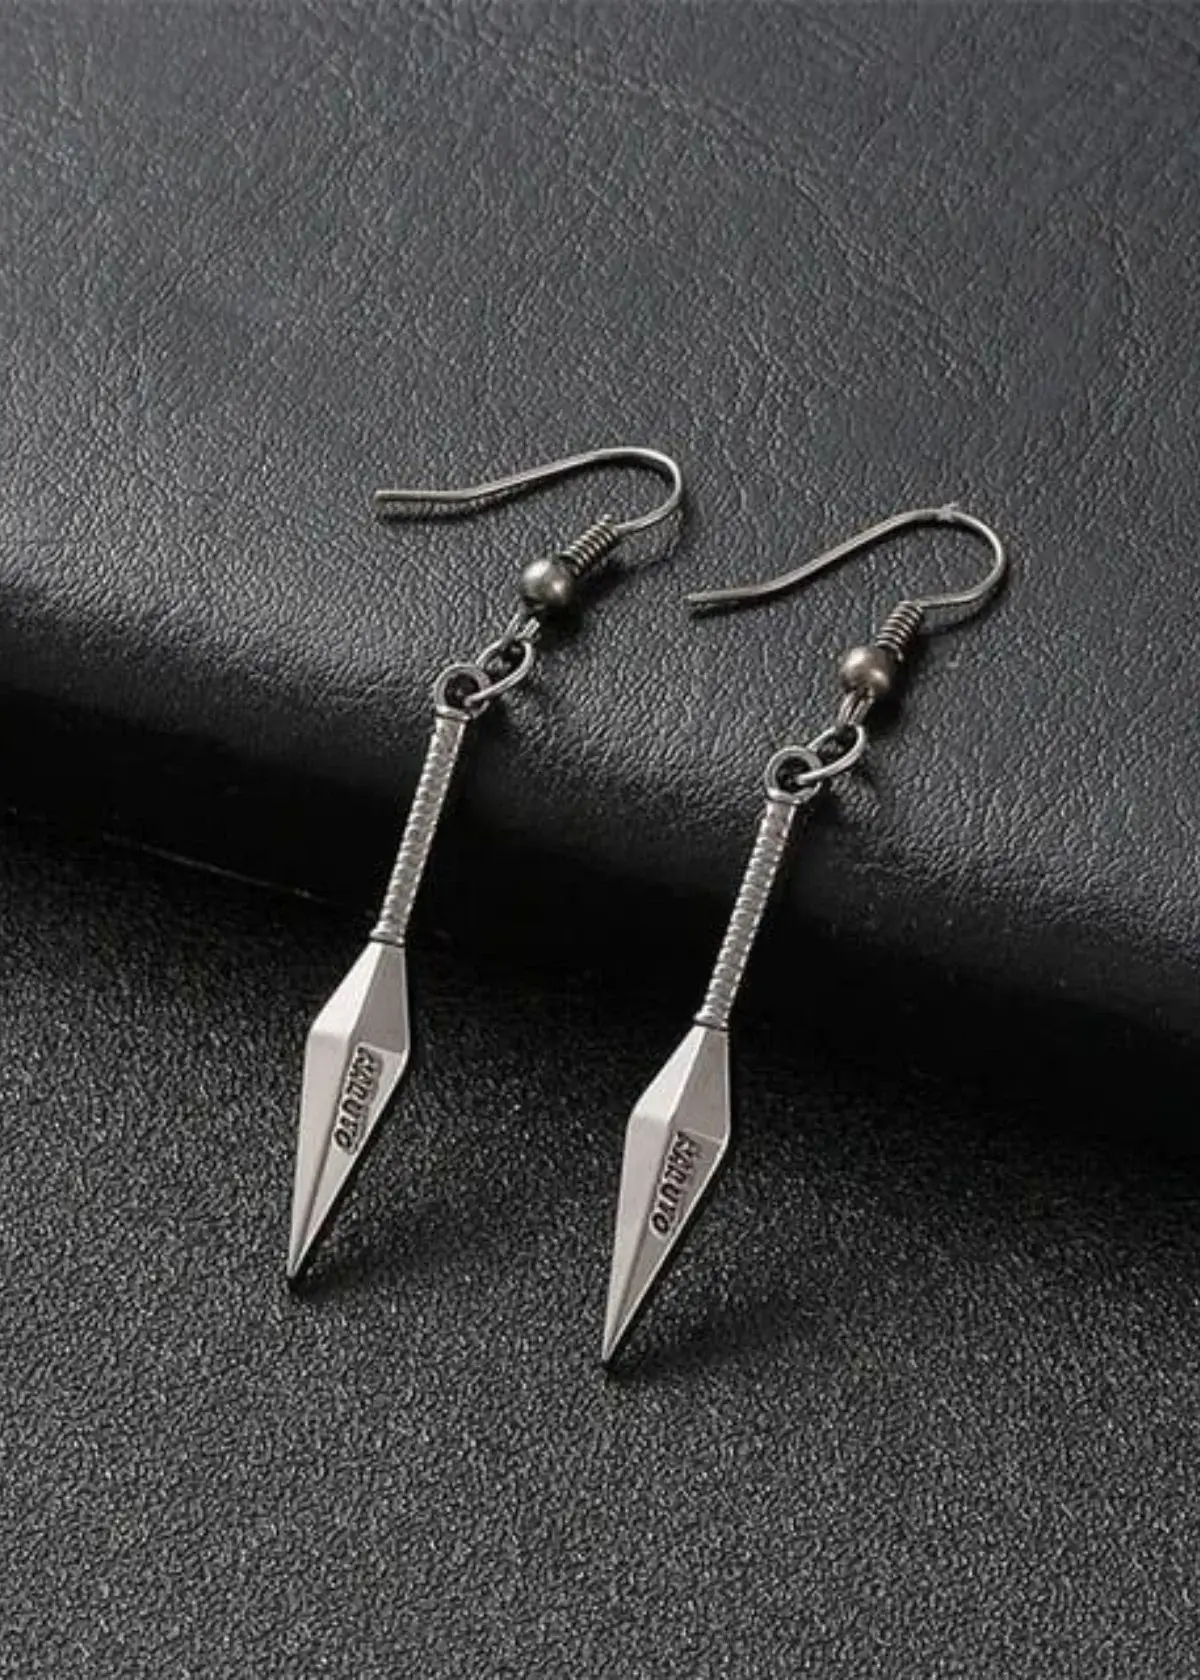 What are kunai earrings?